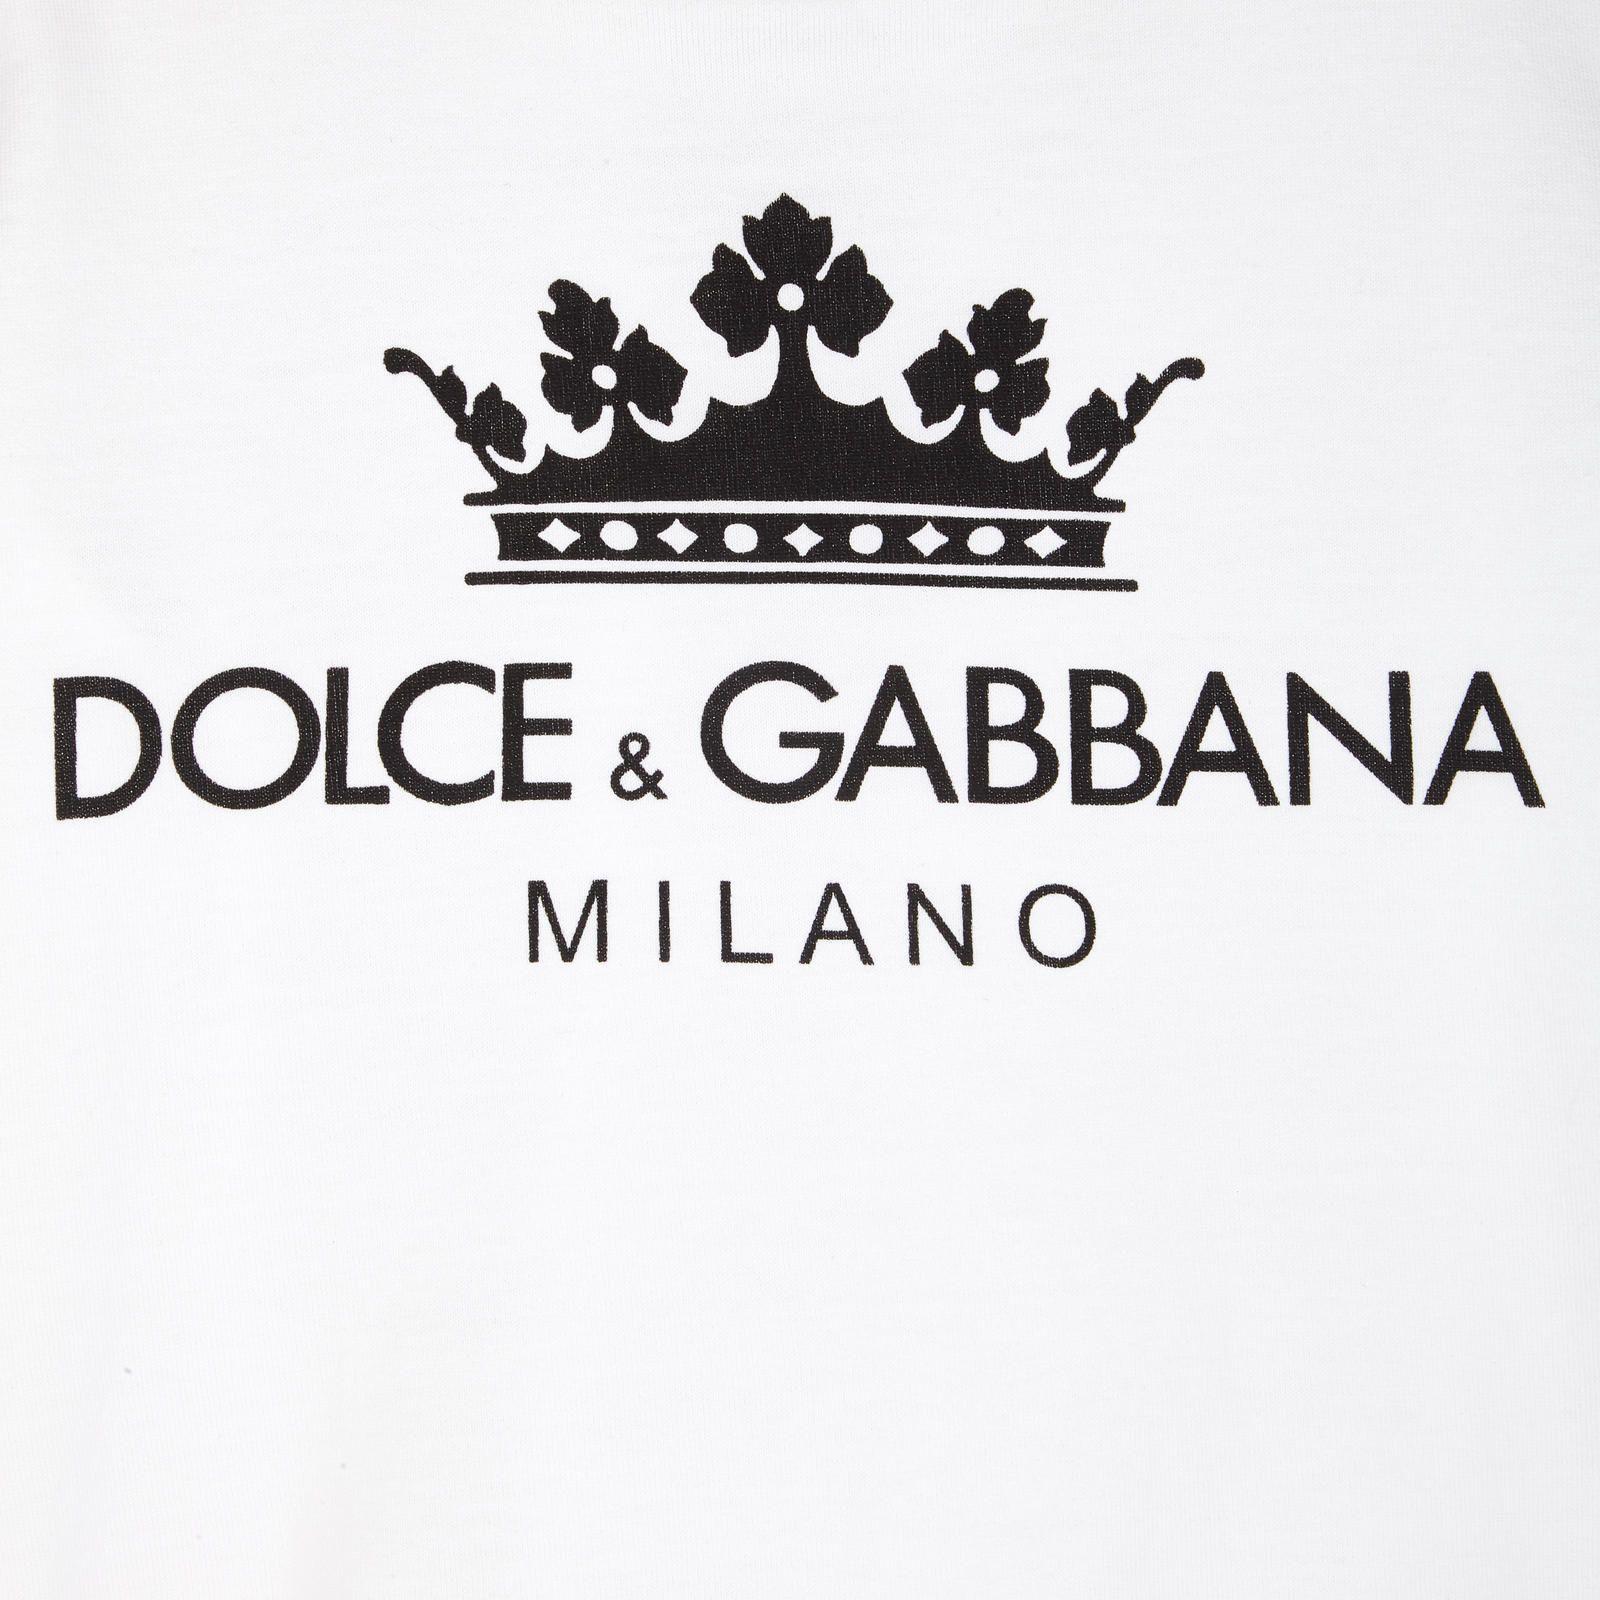 Dolce And Gabbana Logo Logodix